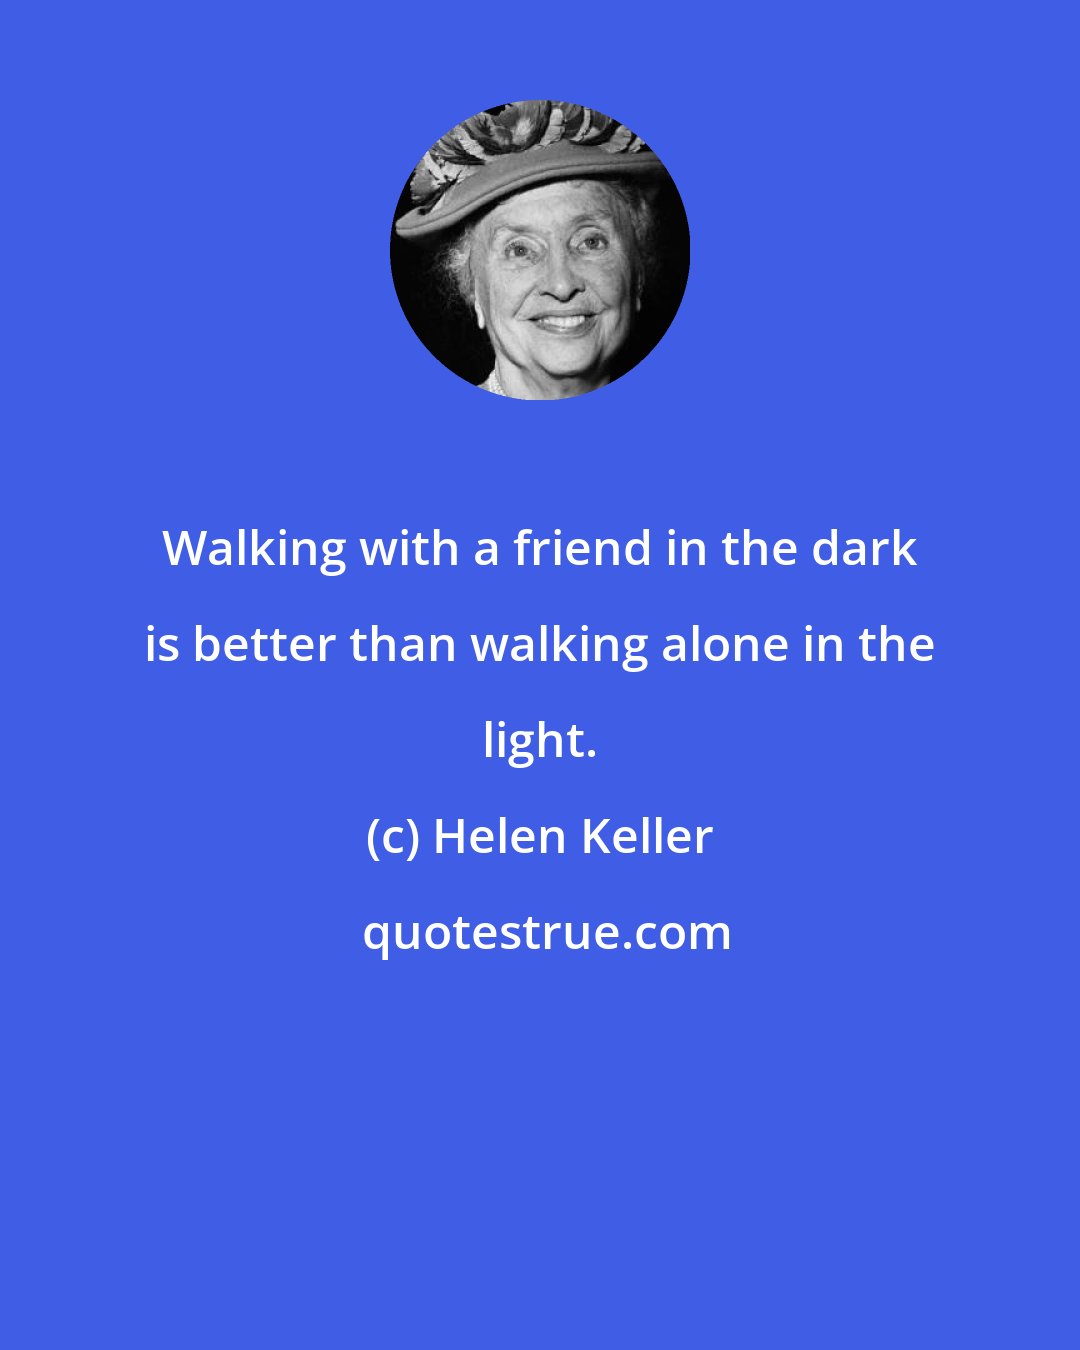 Helen Keller: Walking with a friend in the dark is better than walking alone in the light.